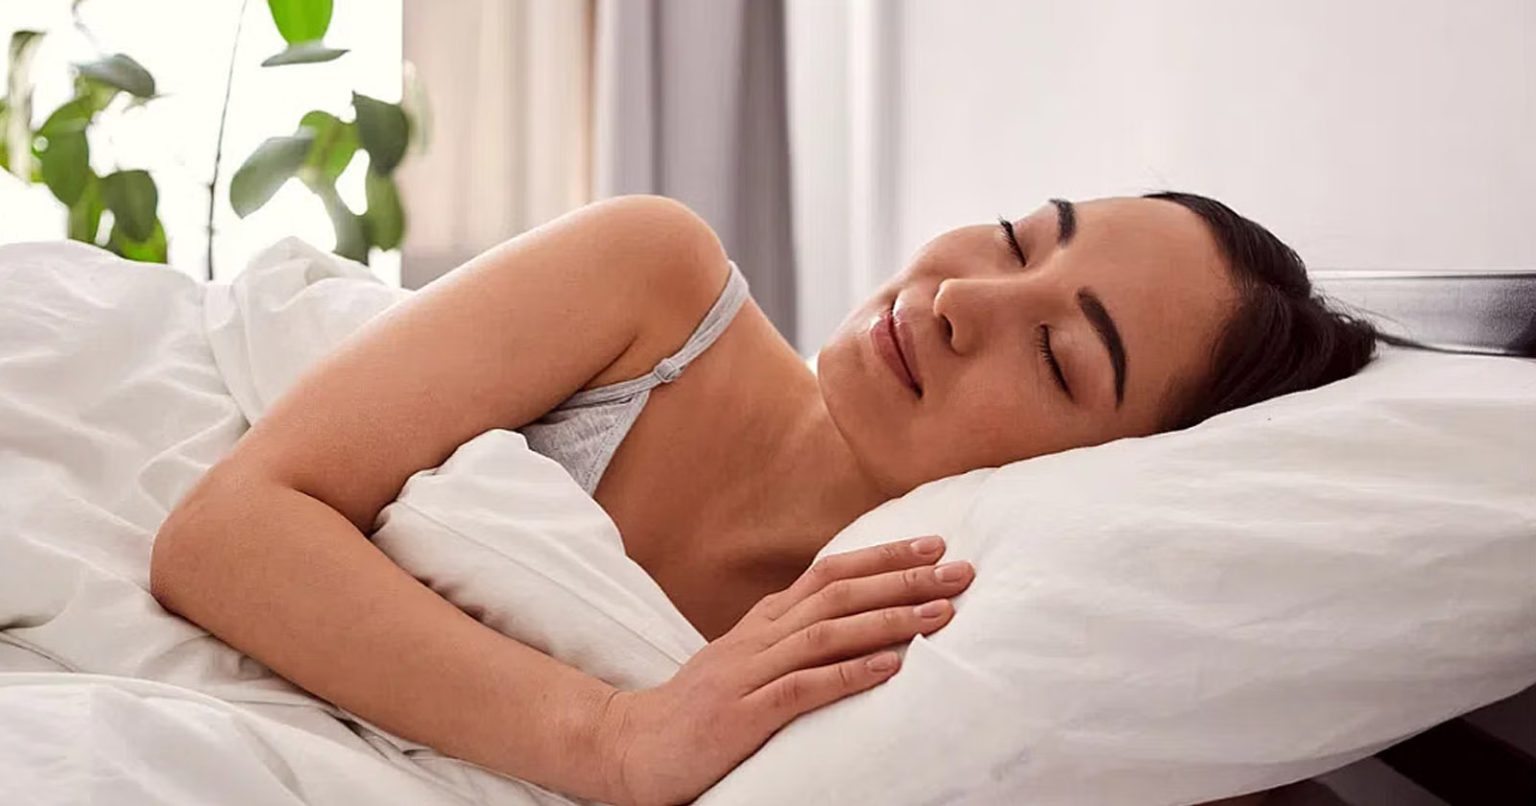 Beli Bantal Gak Bisa Sembarang, Coba 4 Panduan dan 4 Jenis Isi Bantal Ini Supaya Tidur Anda Berkualitas